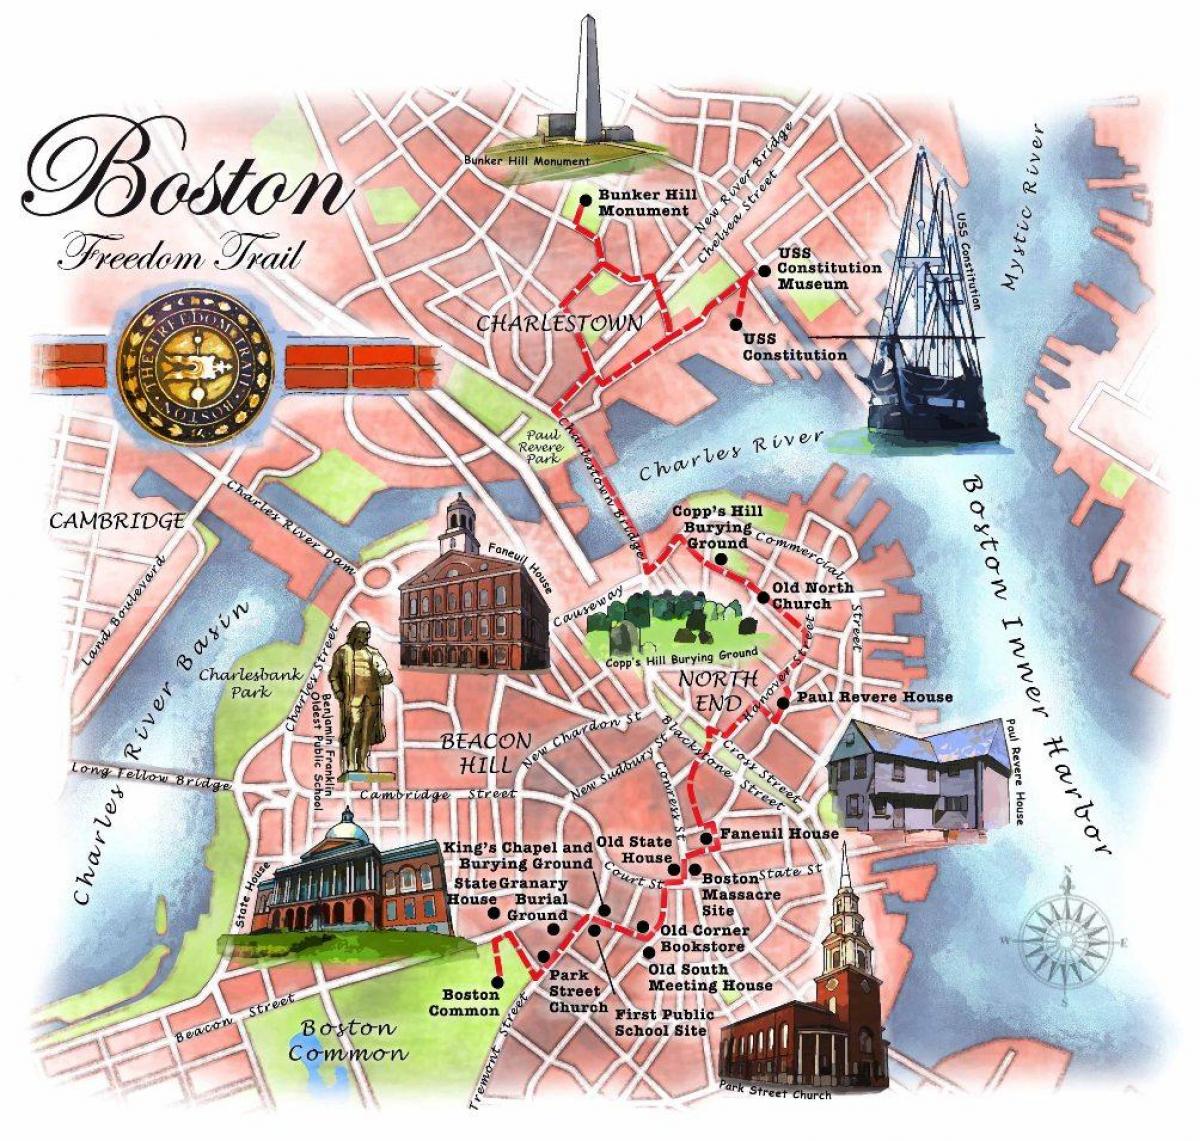 liria gjurmët nëpër harta e Boston